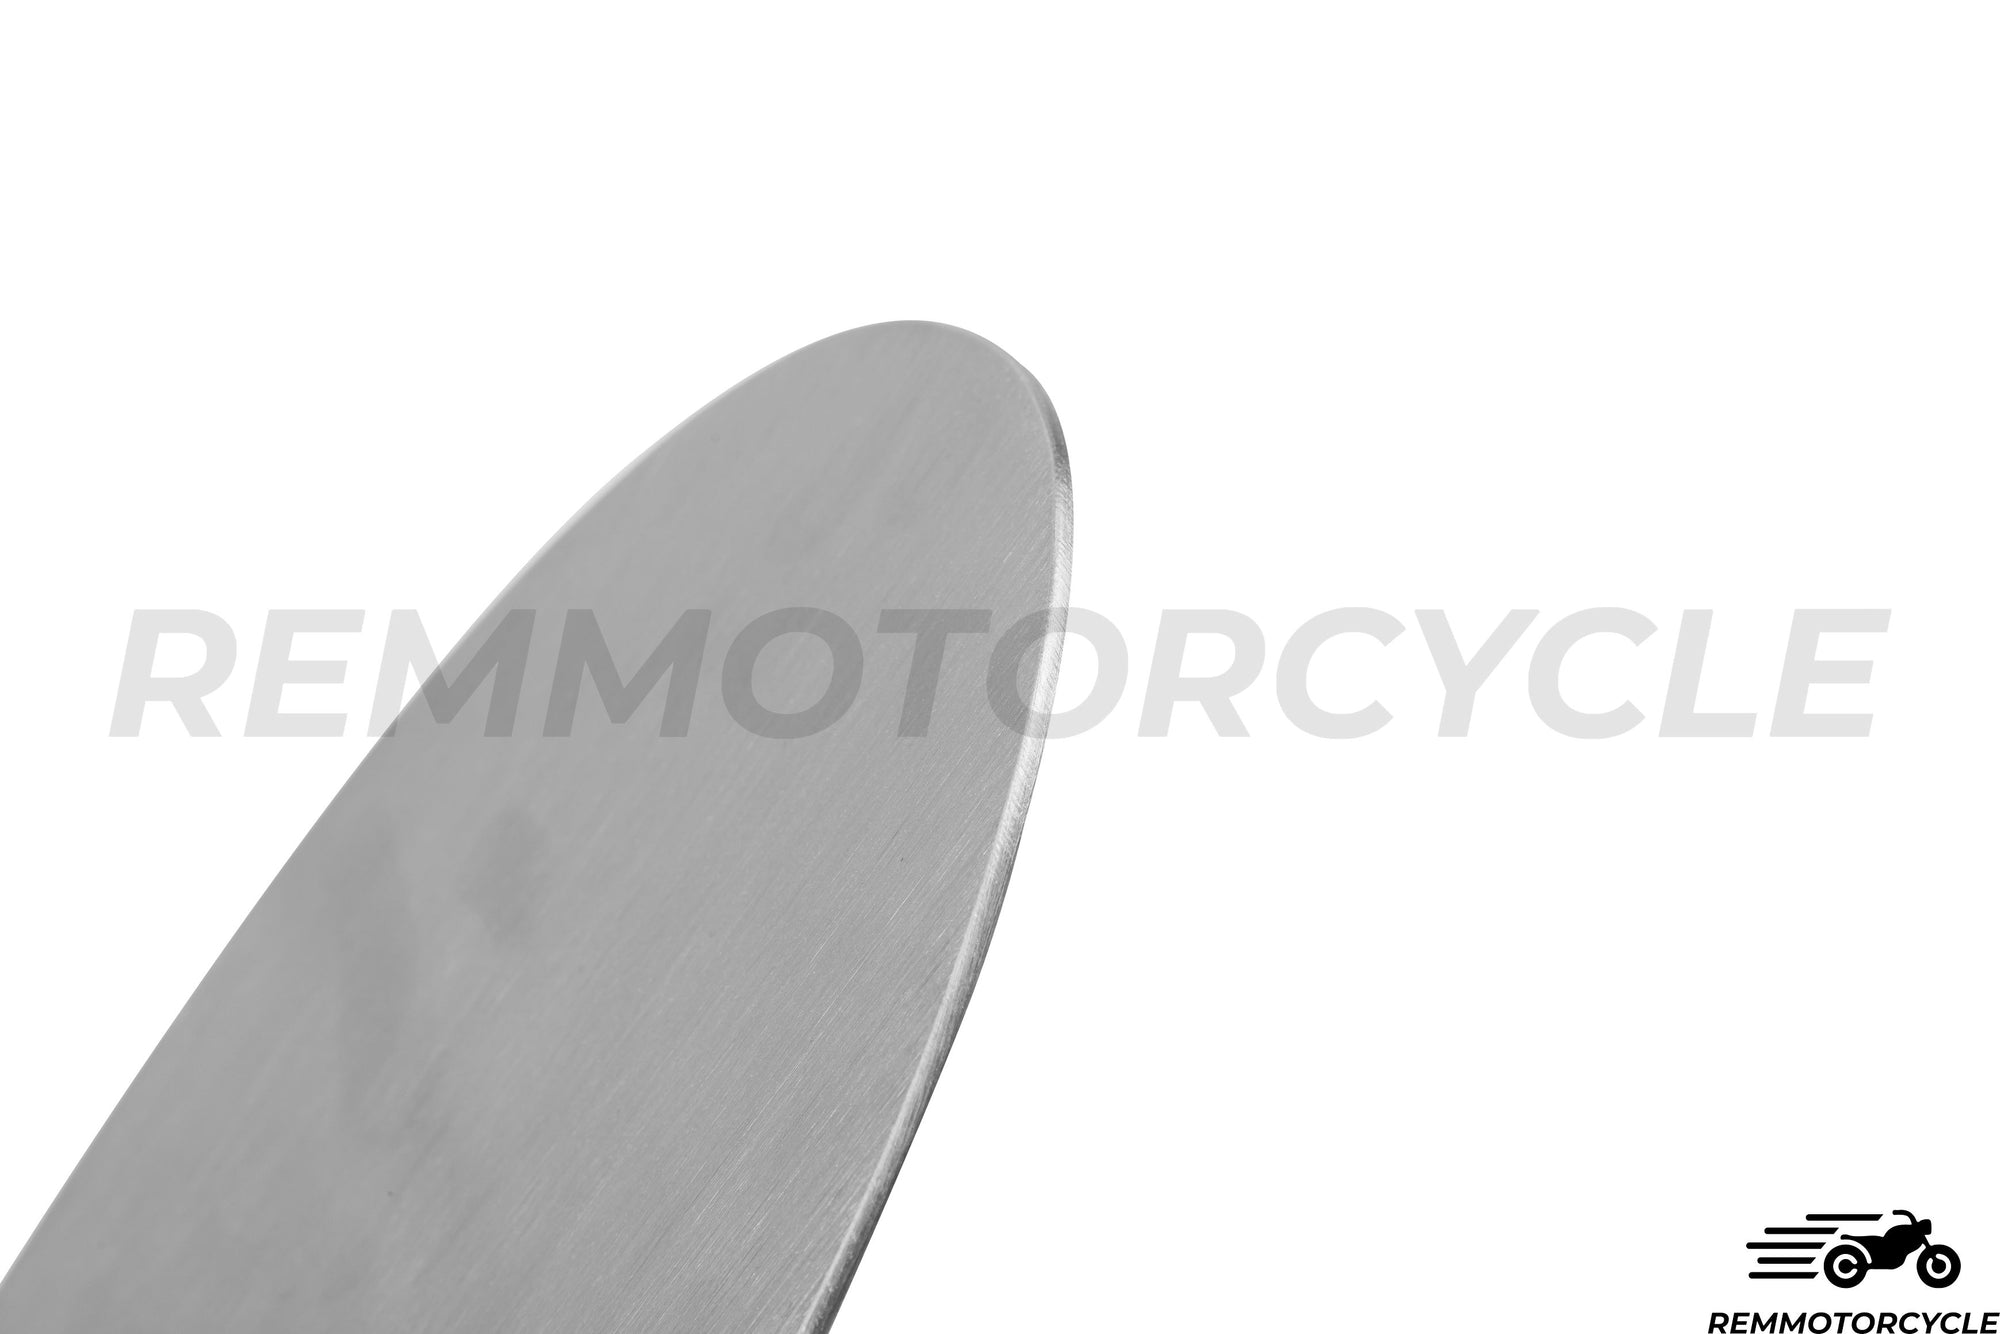 Placa lateral oval de alumínio